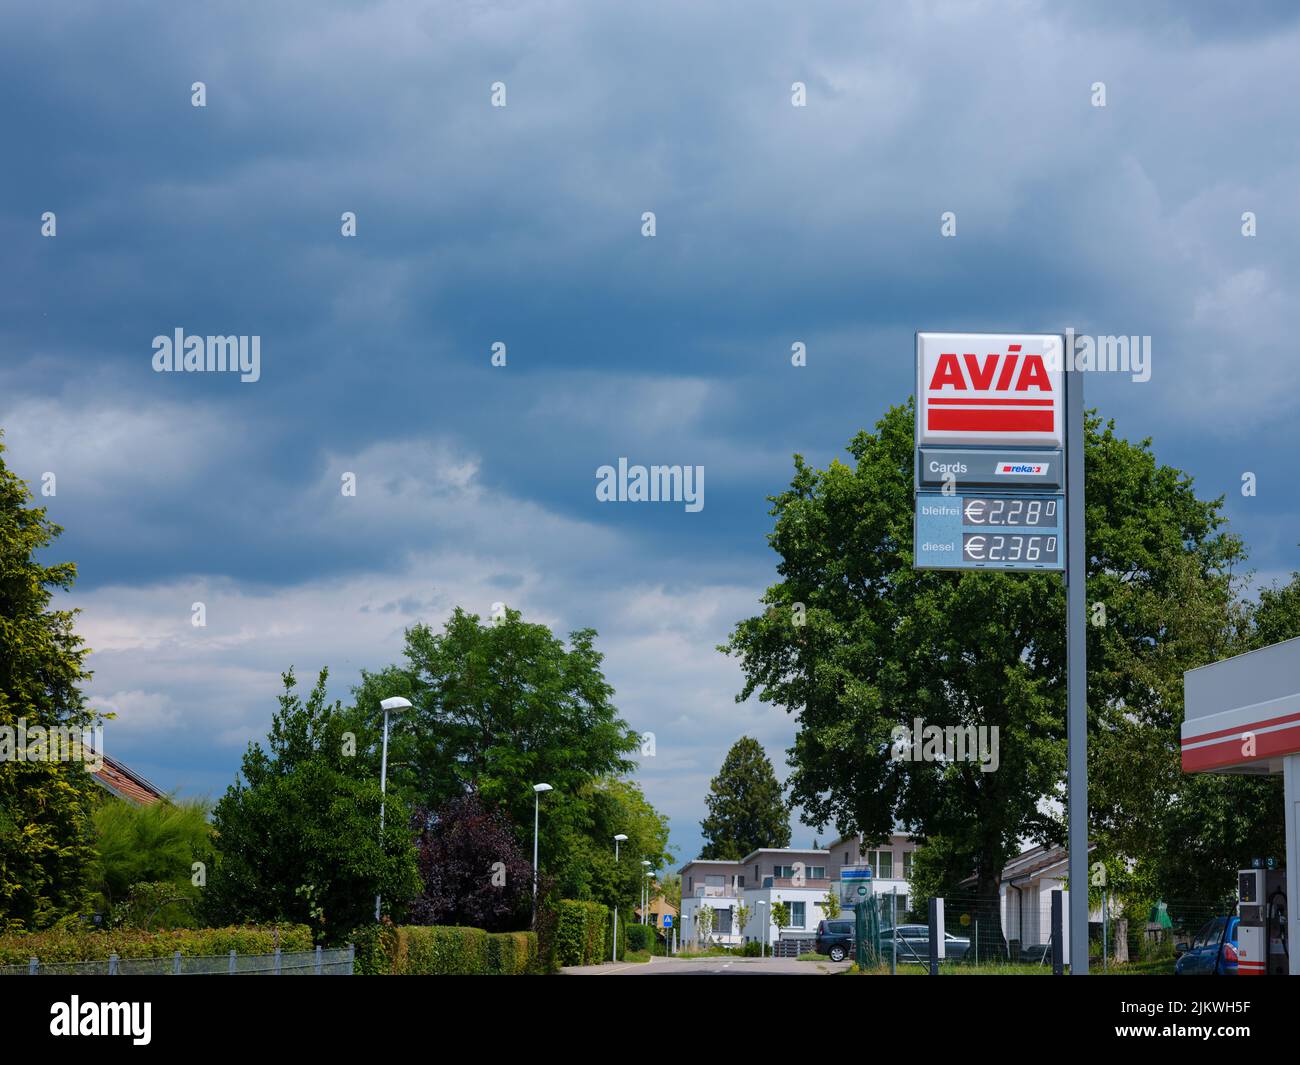 Bâle, Suisse - 4 juillet 2022: Panneau Avia à la station-service contre ciel nuageux. Avec environ 3 000 stations de remplissage, Avia est la marque d'huile minérale indépendante du groupe la plus utilisée en Europe. Banque D'Images